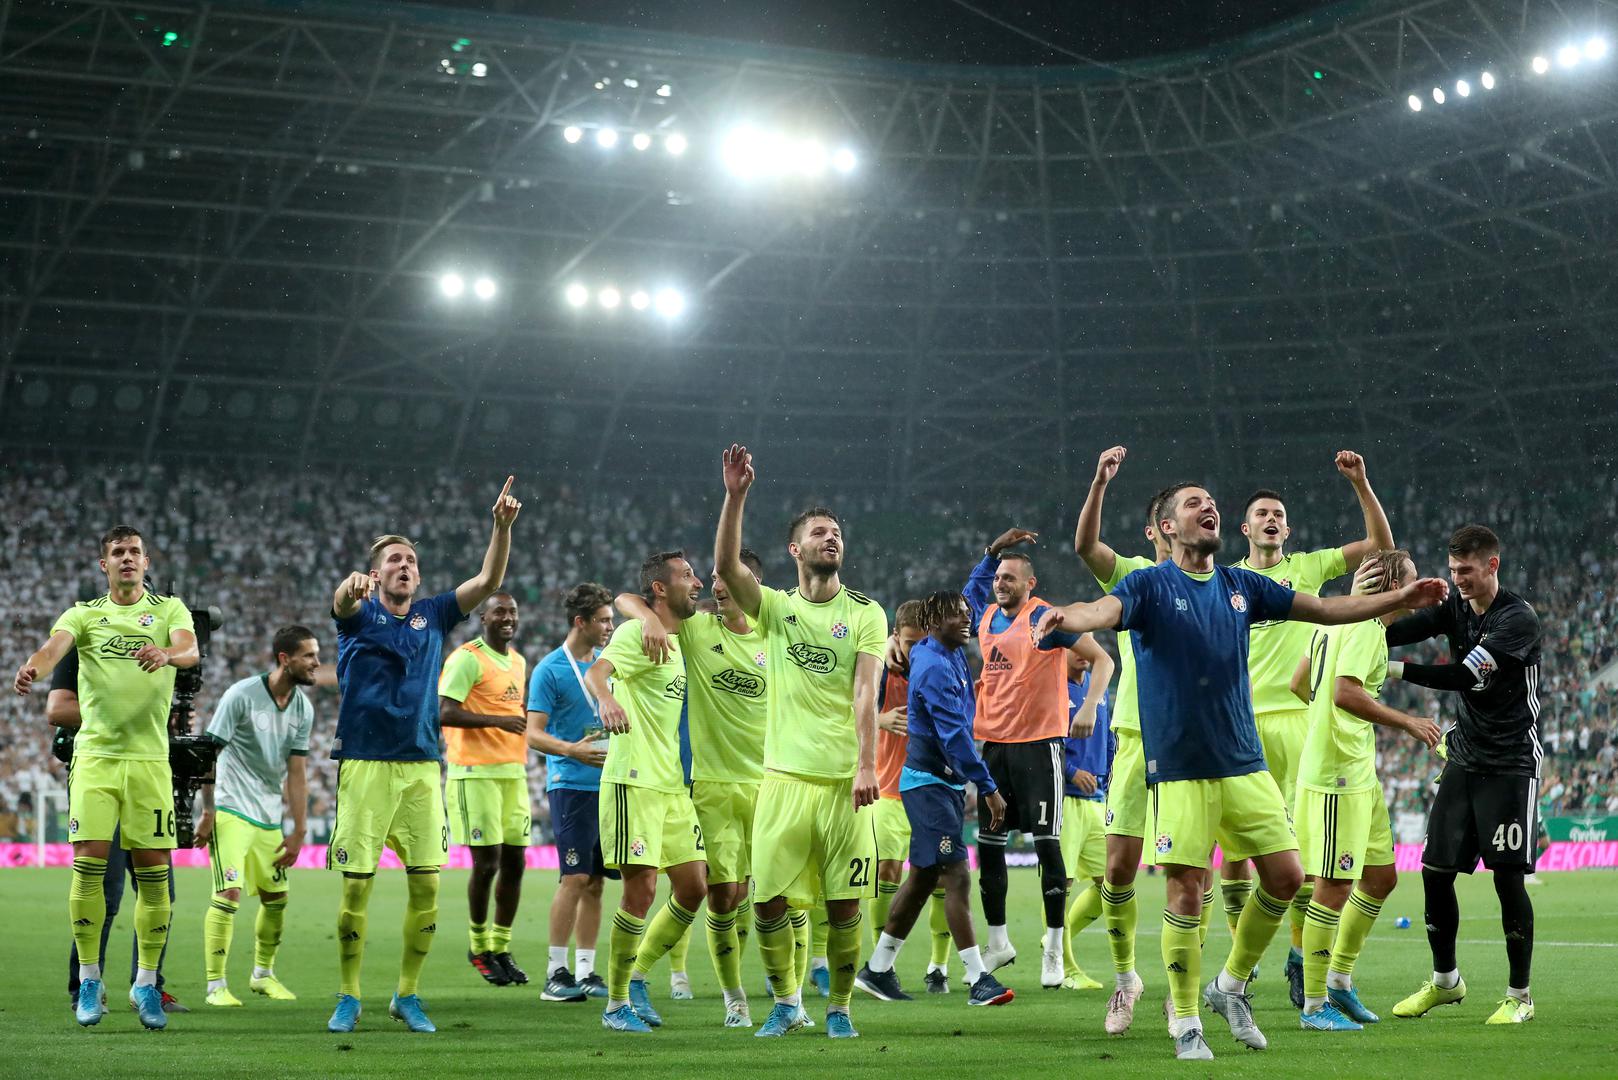 Plavi su uvjerljivo slavili protiv mađarskog predstavnika, a golove su postigli Ademi, Petković, Olmo i Gojak